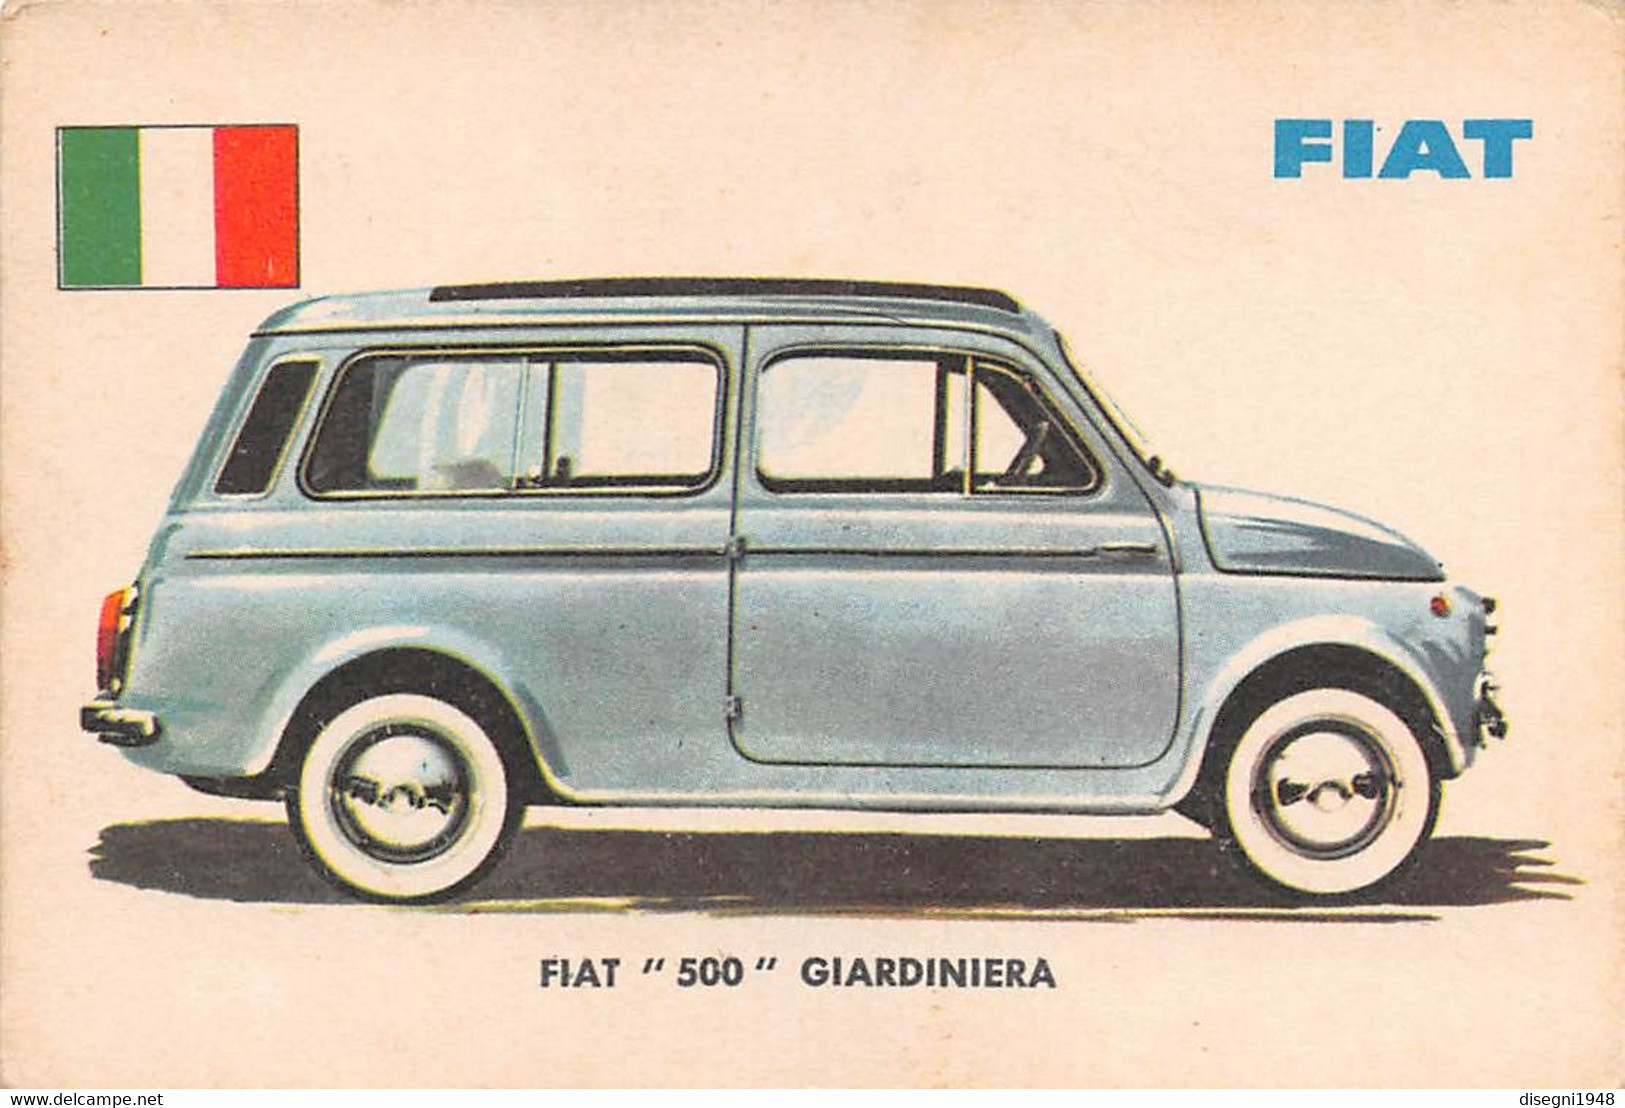 11932 "FIAT 500 GIARDINIERA 14 - AUTO INTERNATIONAL PARADE - SIDAM TORINO - 1961" FIGURINA CARTONATA ORIG. - Motori